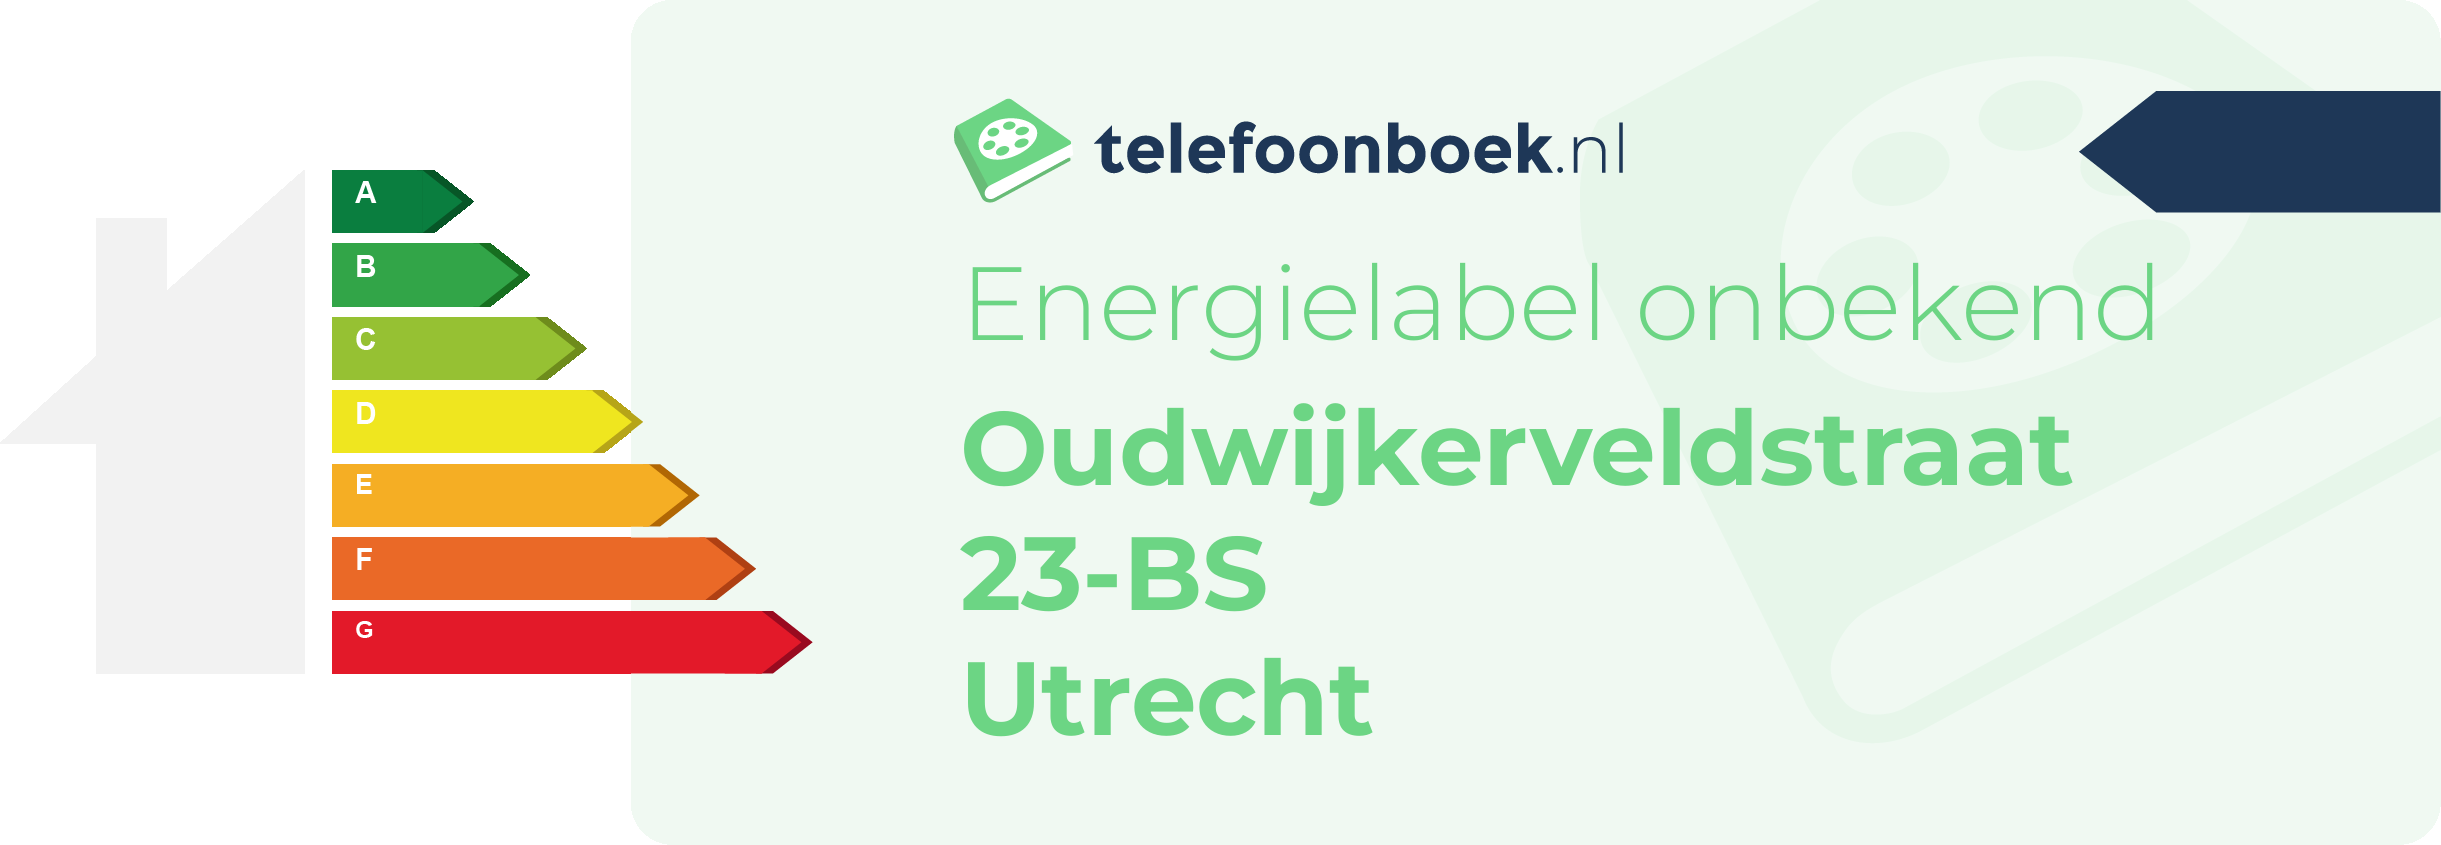 Energielabel Oudwijkerveldstraat 23-BS Utrecht